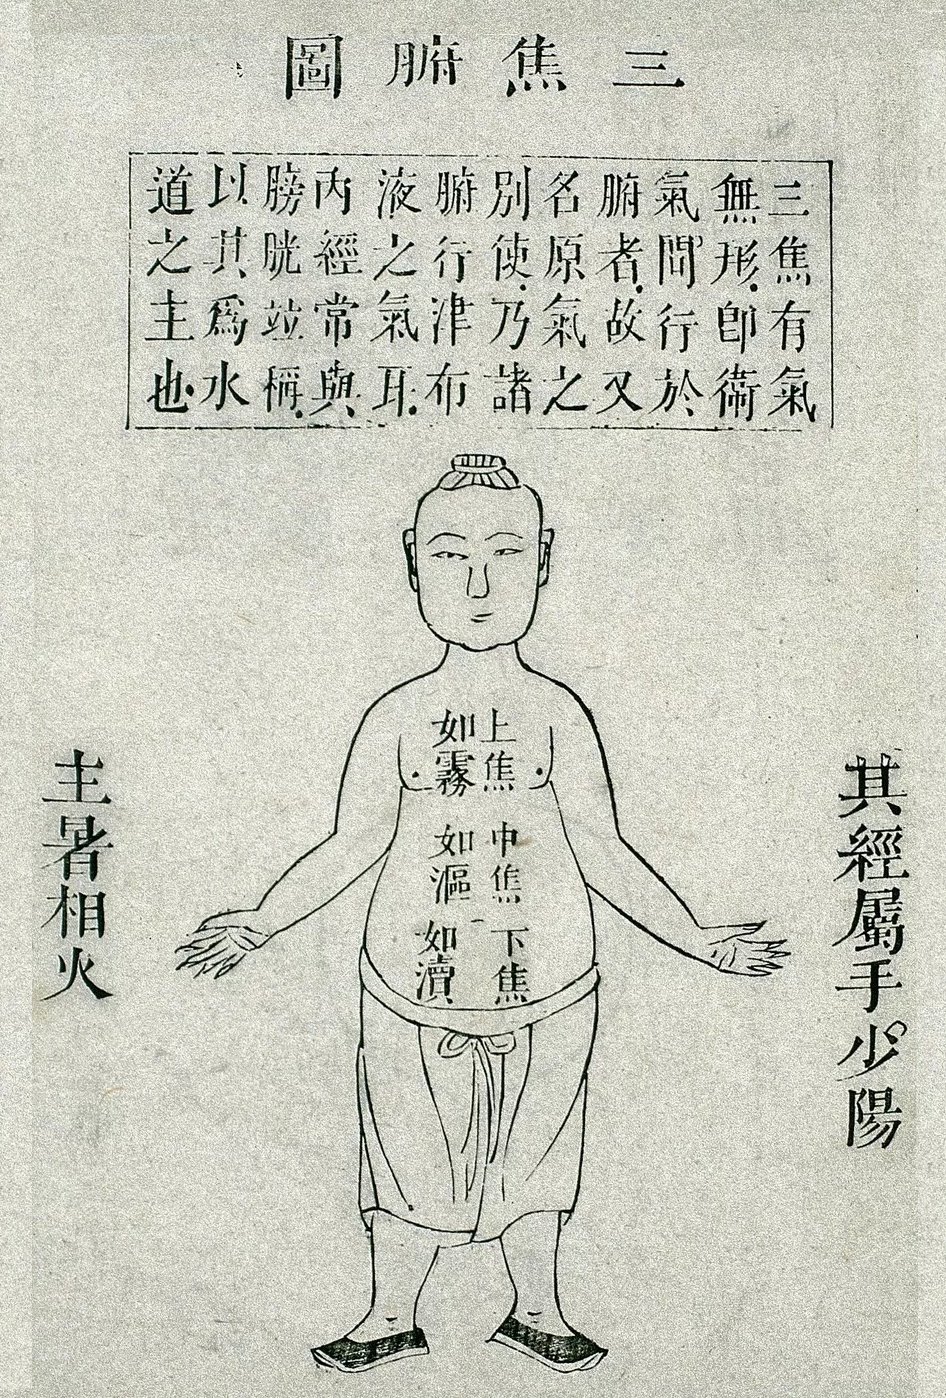 Le triple réchauffeur (三 焦: sān jiāo), gravure sur bois tirée du Canon des difficultés dans le livre des pouls (脉书难经:mài shū nán jīng ) de 扁䳍: Biǎn Què, édition de 1817.